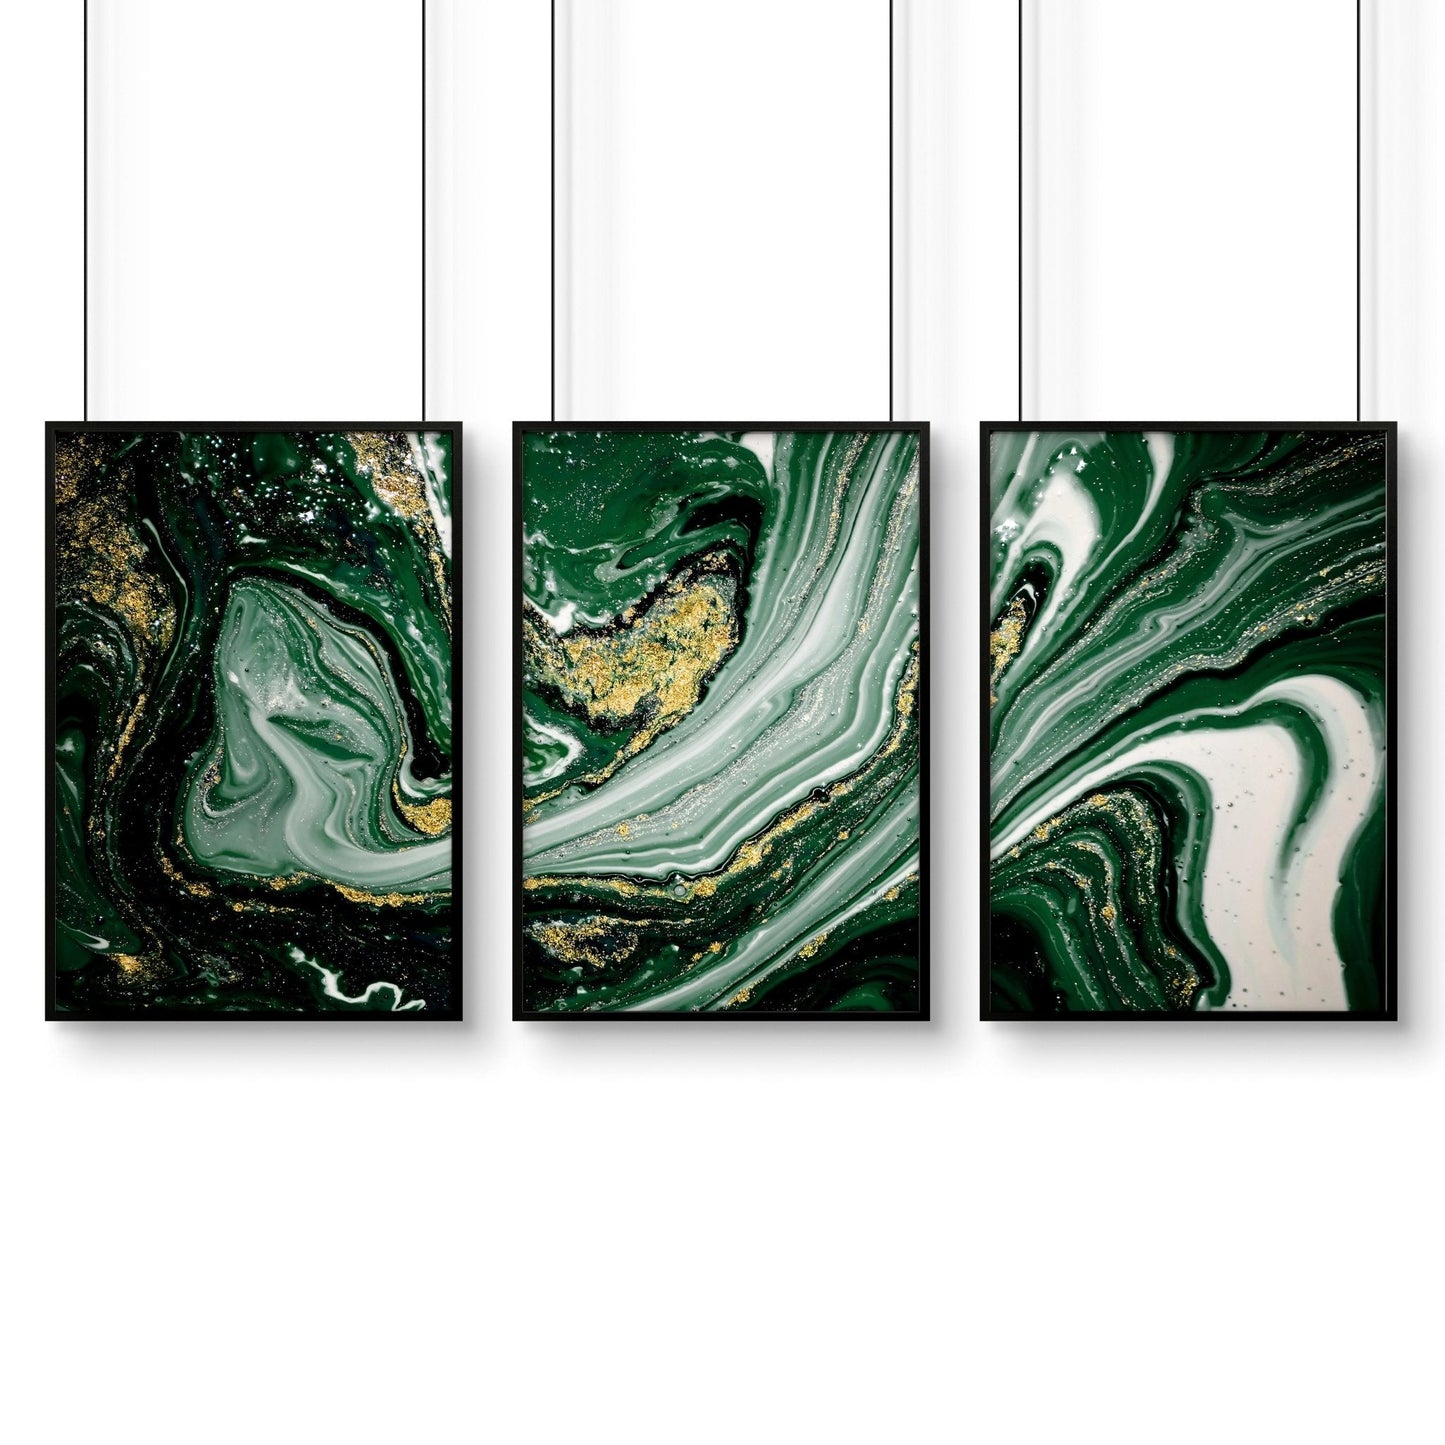 Sage Green wall abstract art | set of 3 wall art prints